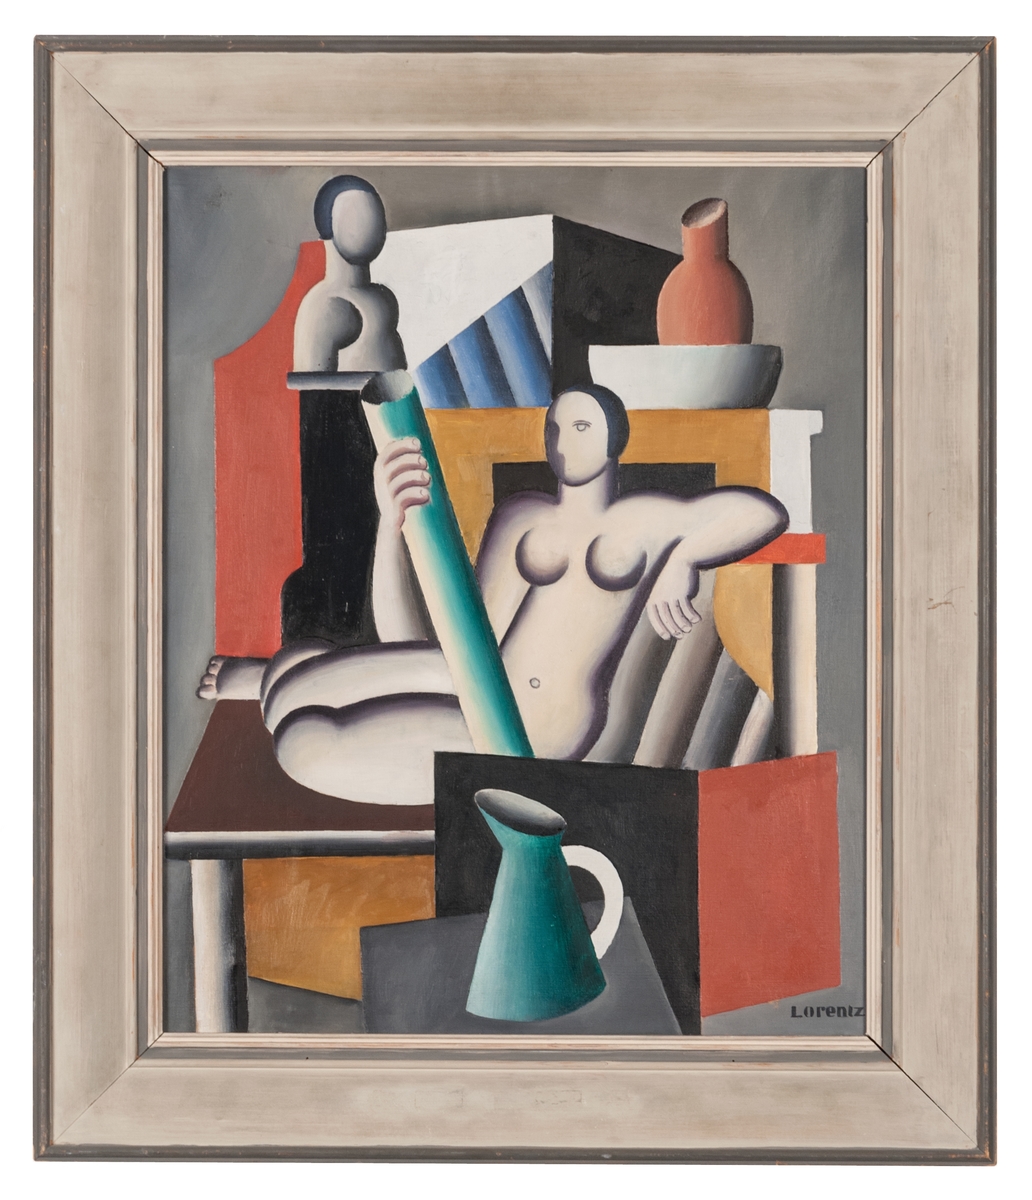 Oljemålning, olja på duk, "Modellen" av W. Lorentzon. Kvinnlig, naken modell, fat, kannor m.m. i en kubistinfluerad stil.